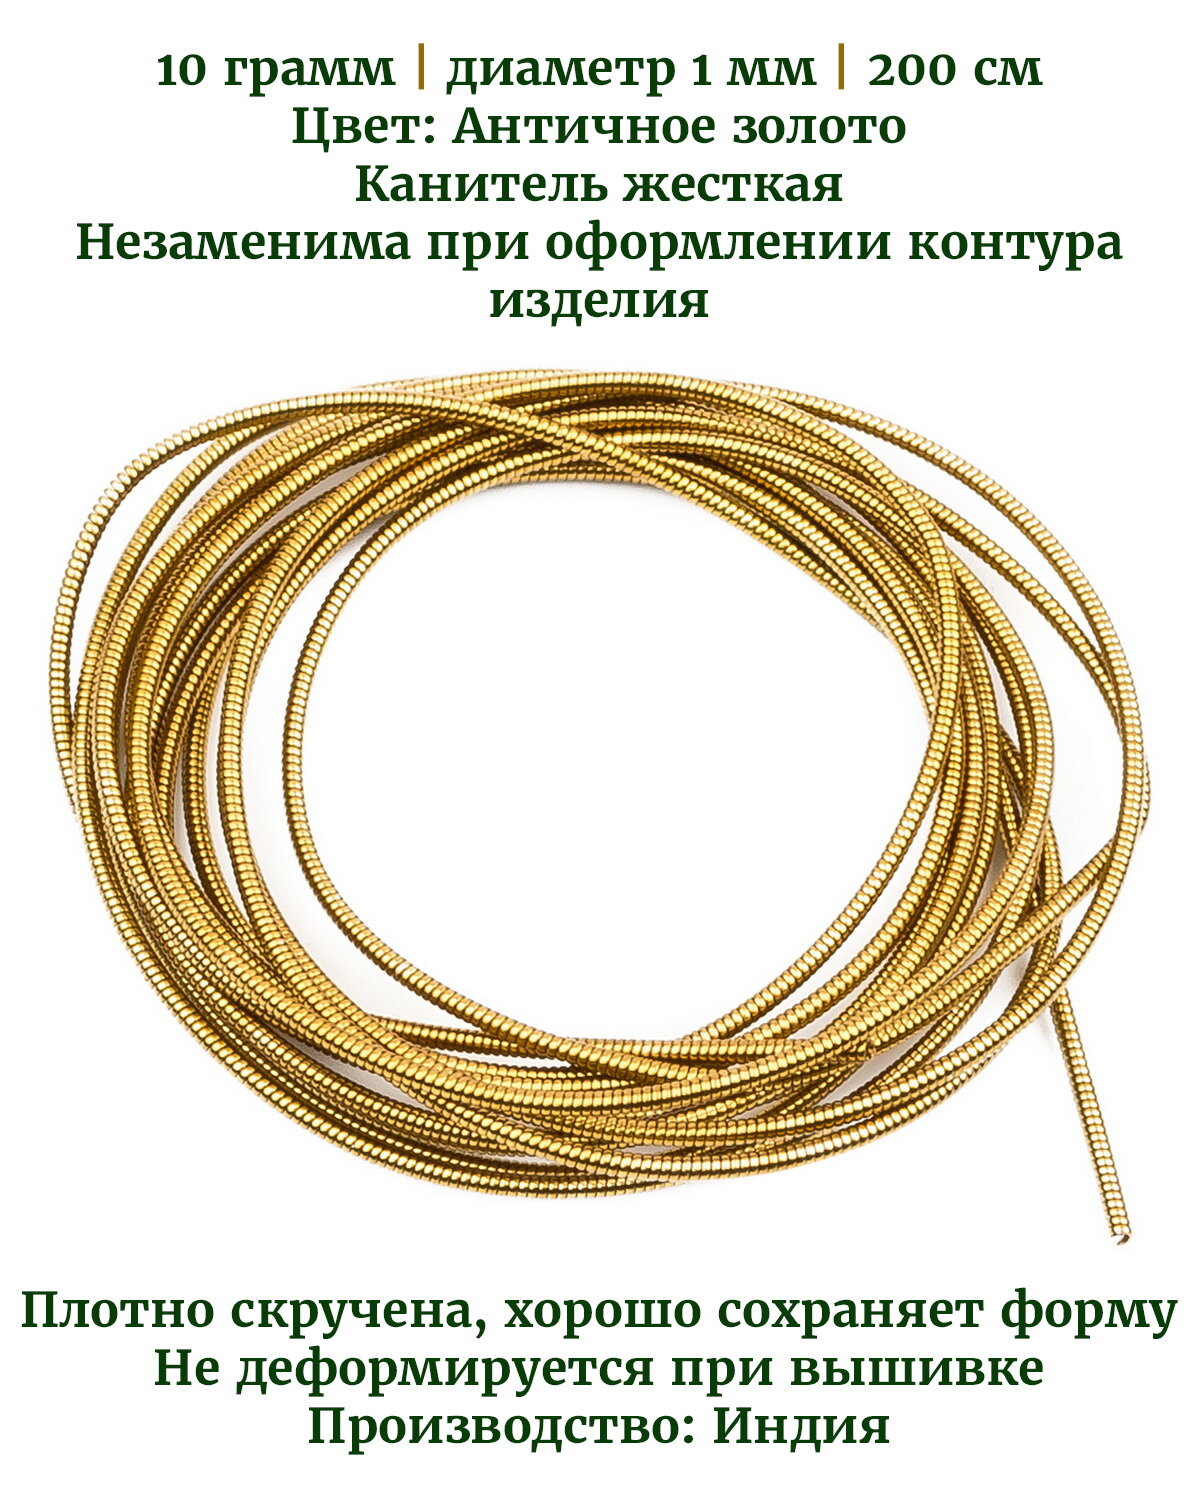 Канитель жесткая, цвет: античное золото, диаметр 1 мм, 10 грамм (примерно 200 см)